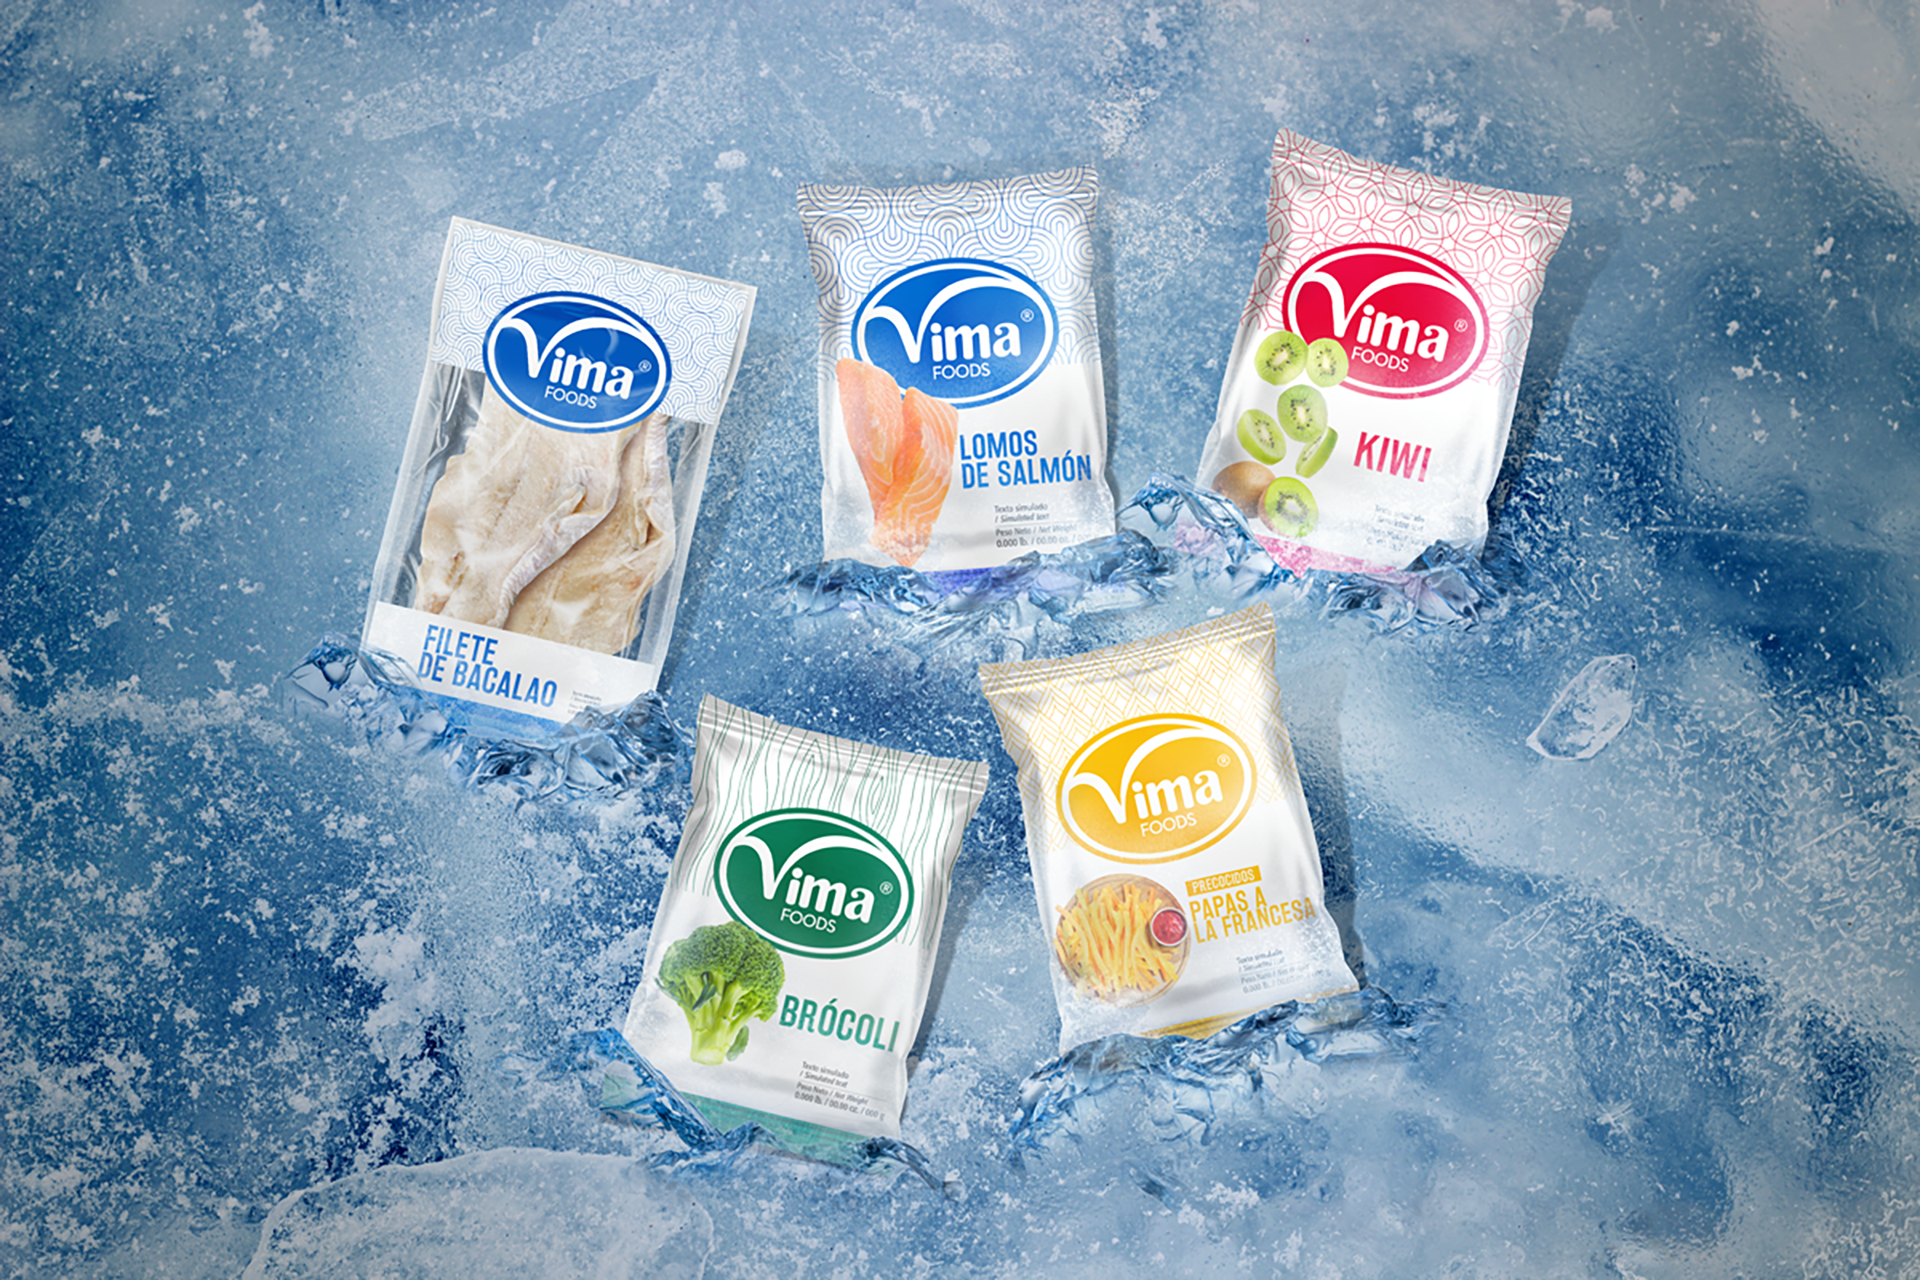 Identidad corporativa, packaging y diseño de etiquetas paraproductos alimenticios Vima